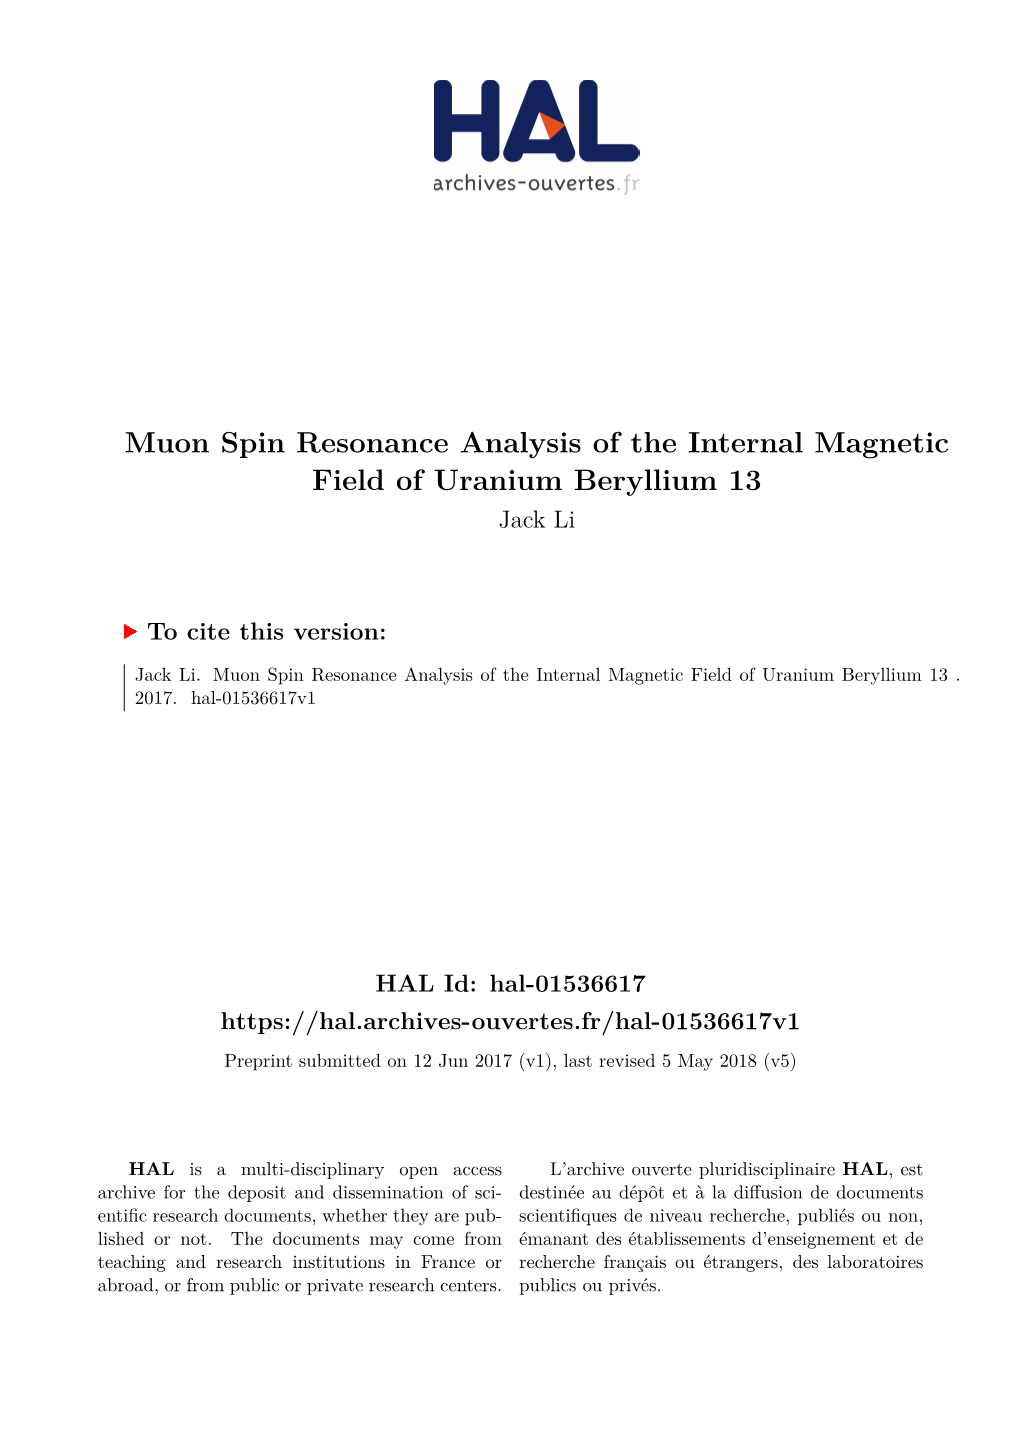 Muon Spin Resonance Analysis of the Internal Magnetic Field of Uranium Beryllium 13 Jack Li